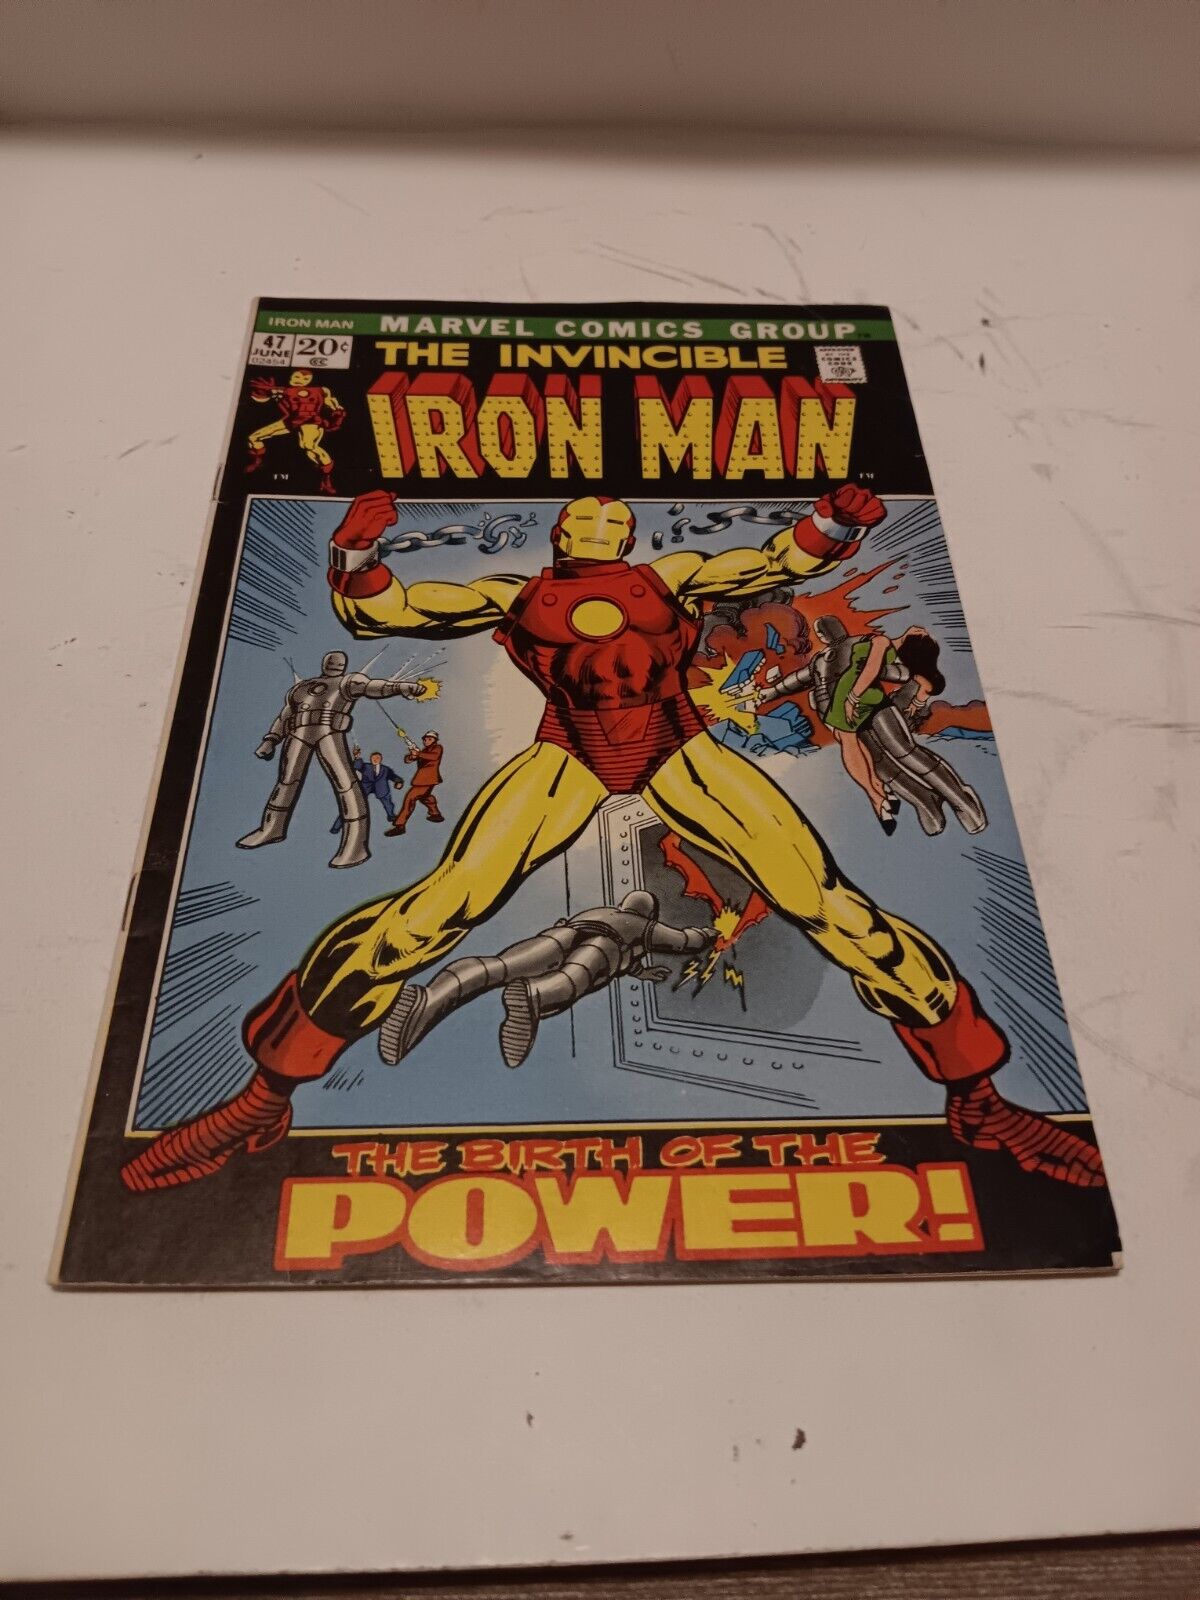 INVINCIBLE IRON MAN #47 (1972) - VERY NICE HIGH GRADE BOOK- ORIGIN RETOLD -